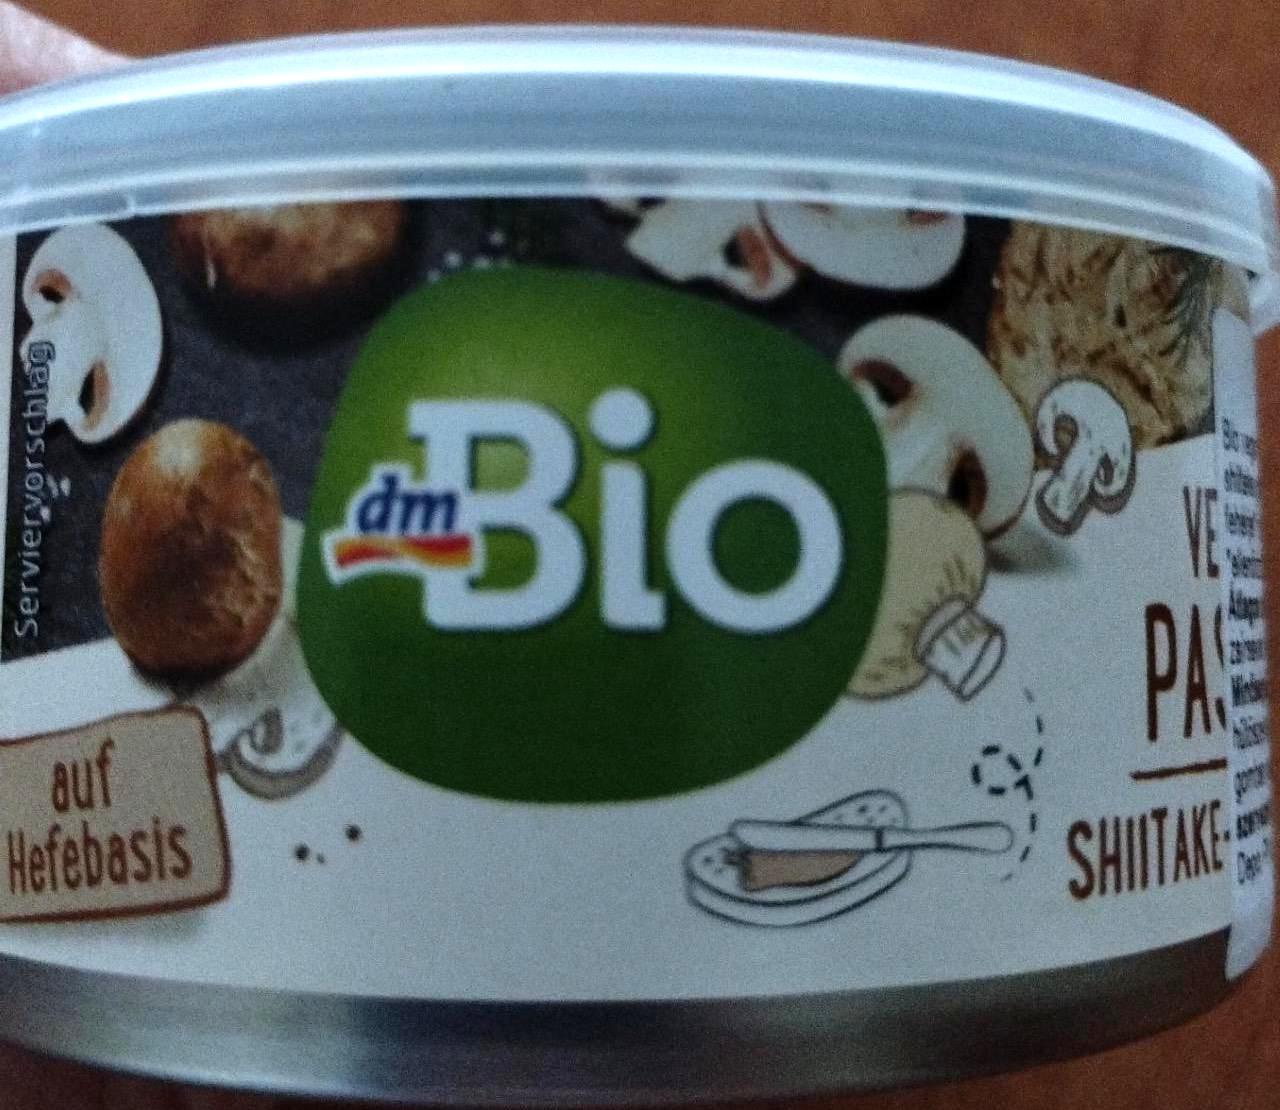 Képek - Shiitake-champignon gombás vegán pástétom dmBio